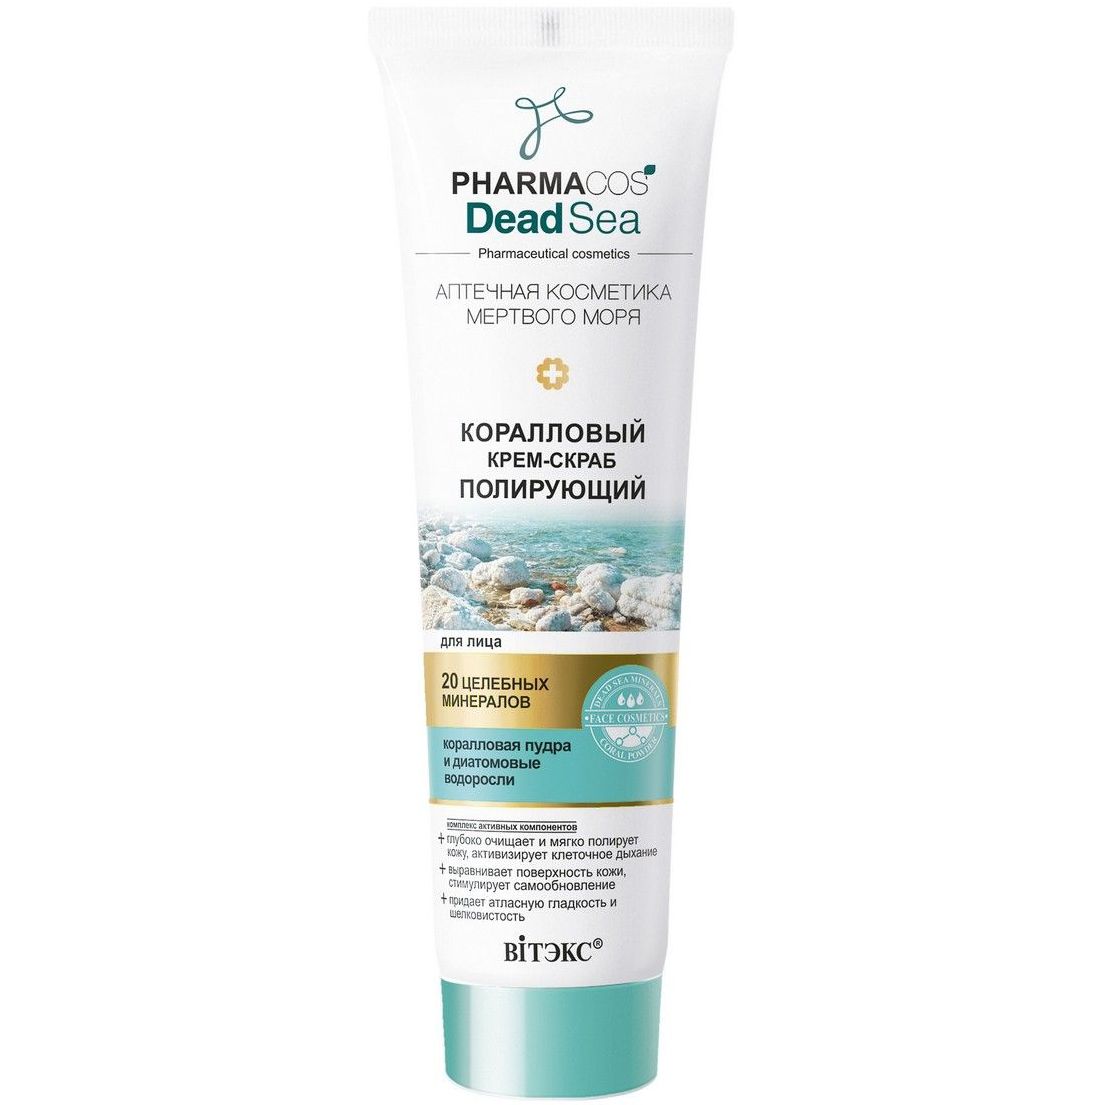 Специальный крем купить. Витэкс Pharmacos Dead Sea крем-Light. Pharmacos Dead Sea грязевая отшелушивающая маска для лица,75мл.. Витекс Pharmacos Dead Sea Oil-крем. Витэкс Pharmacos Dead Sea для сухой, очень сухой и атопичной кожи.